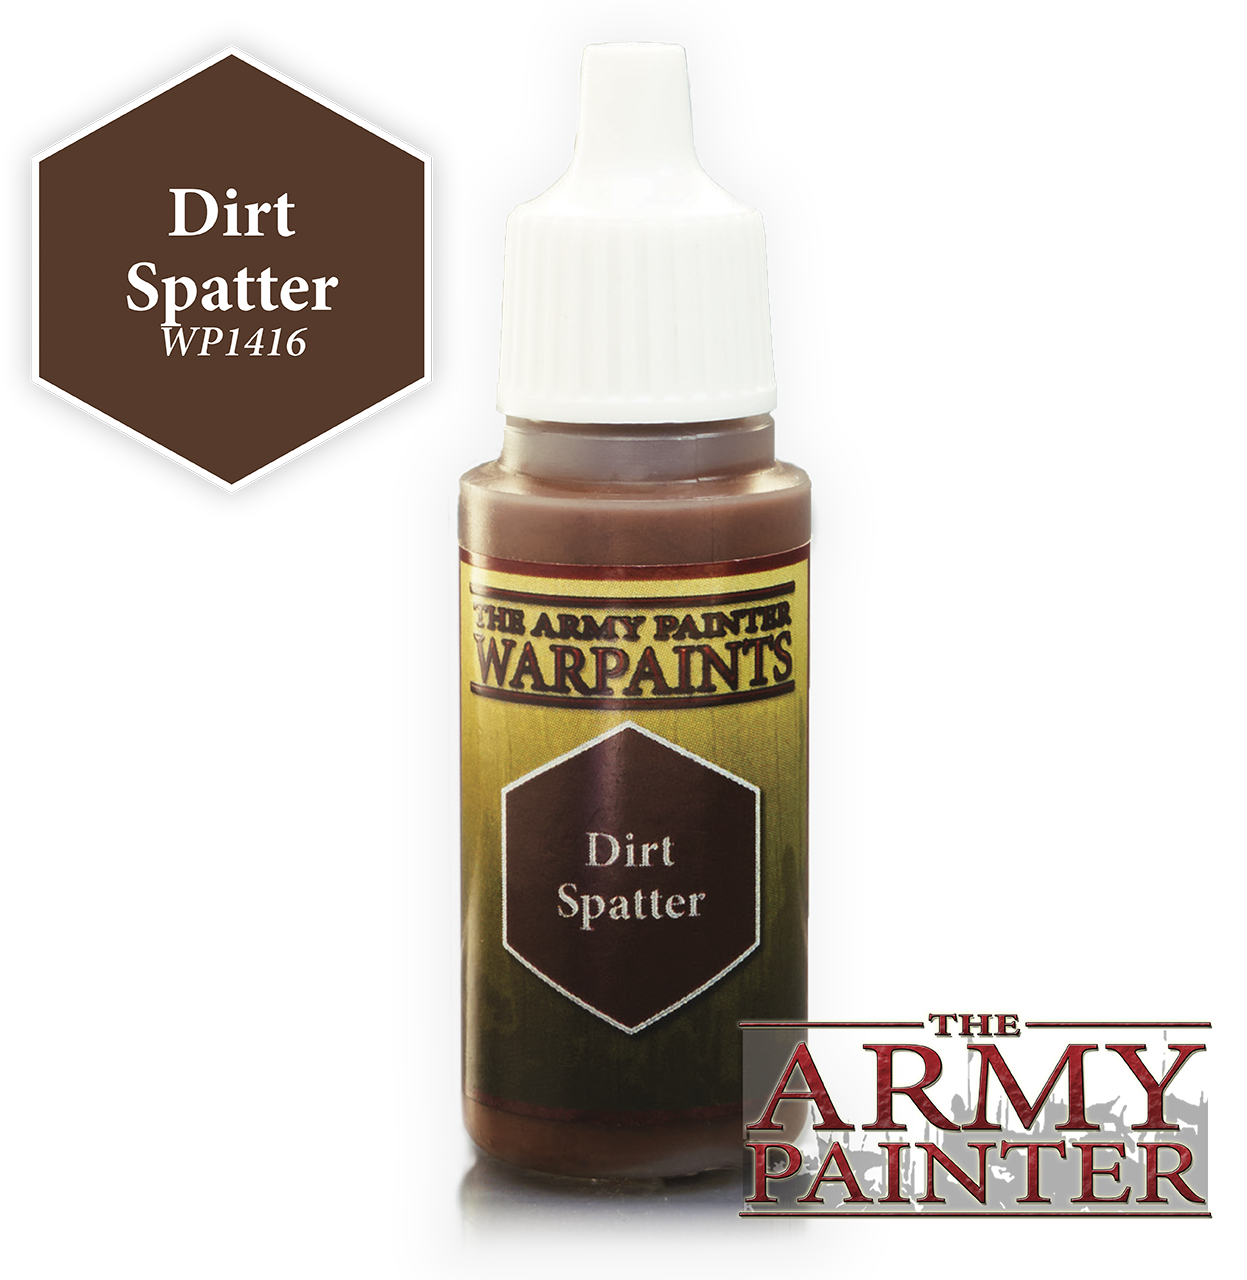 Dirt Spatter - Army Painter Warpaints